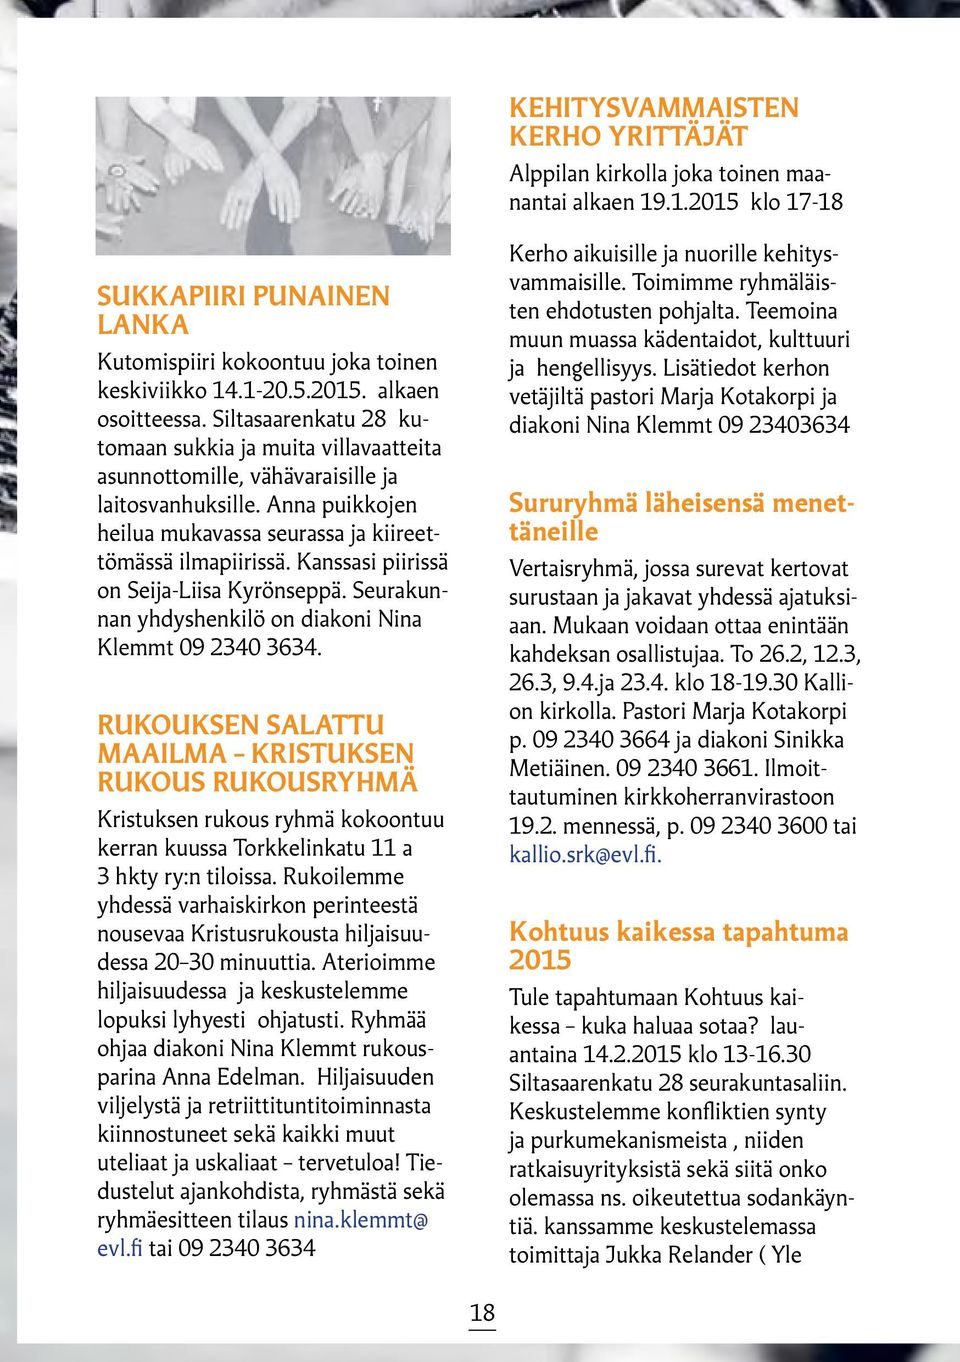 Kanssasi piirissä on Seija-Liisa Kyrönseppä. Seurakunnan yhdyshenkilö on diakoni Nina Klemmt 09 2340 3634.